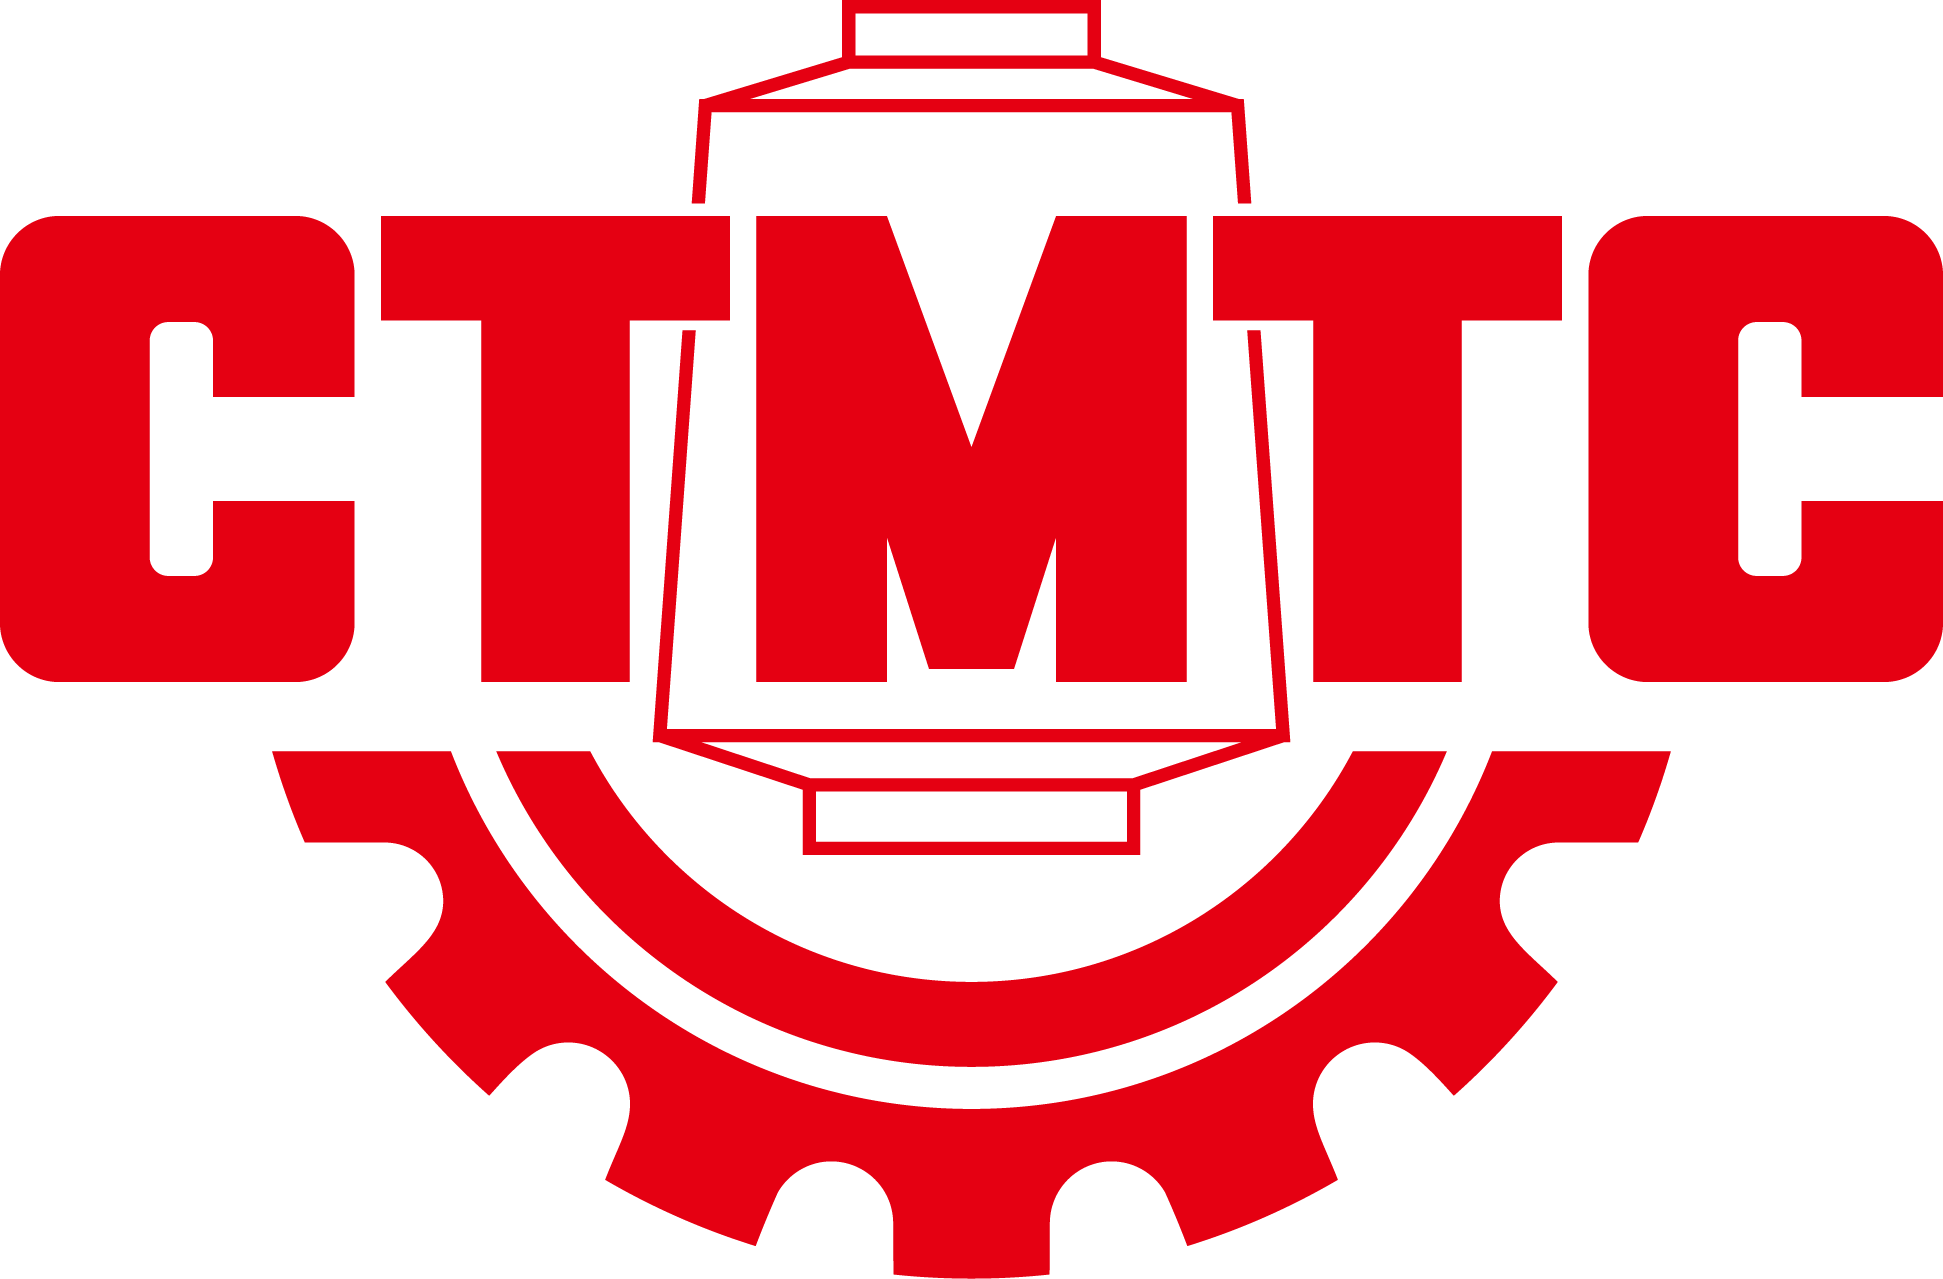 Tekstil Makinaları Şirketi —-CTMTC